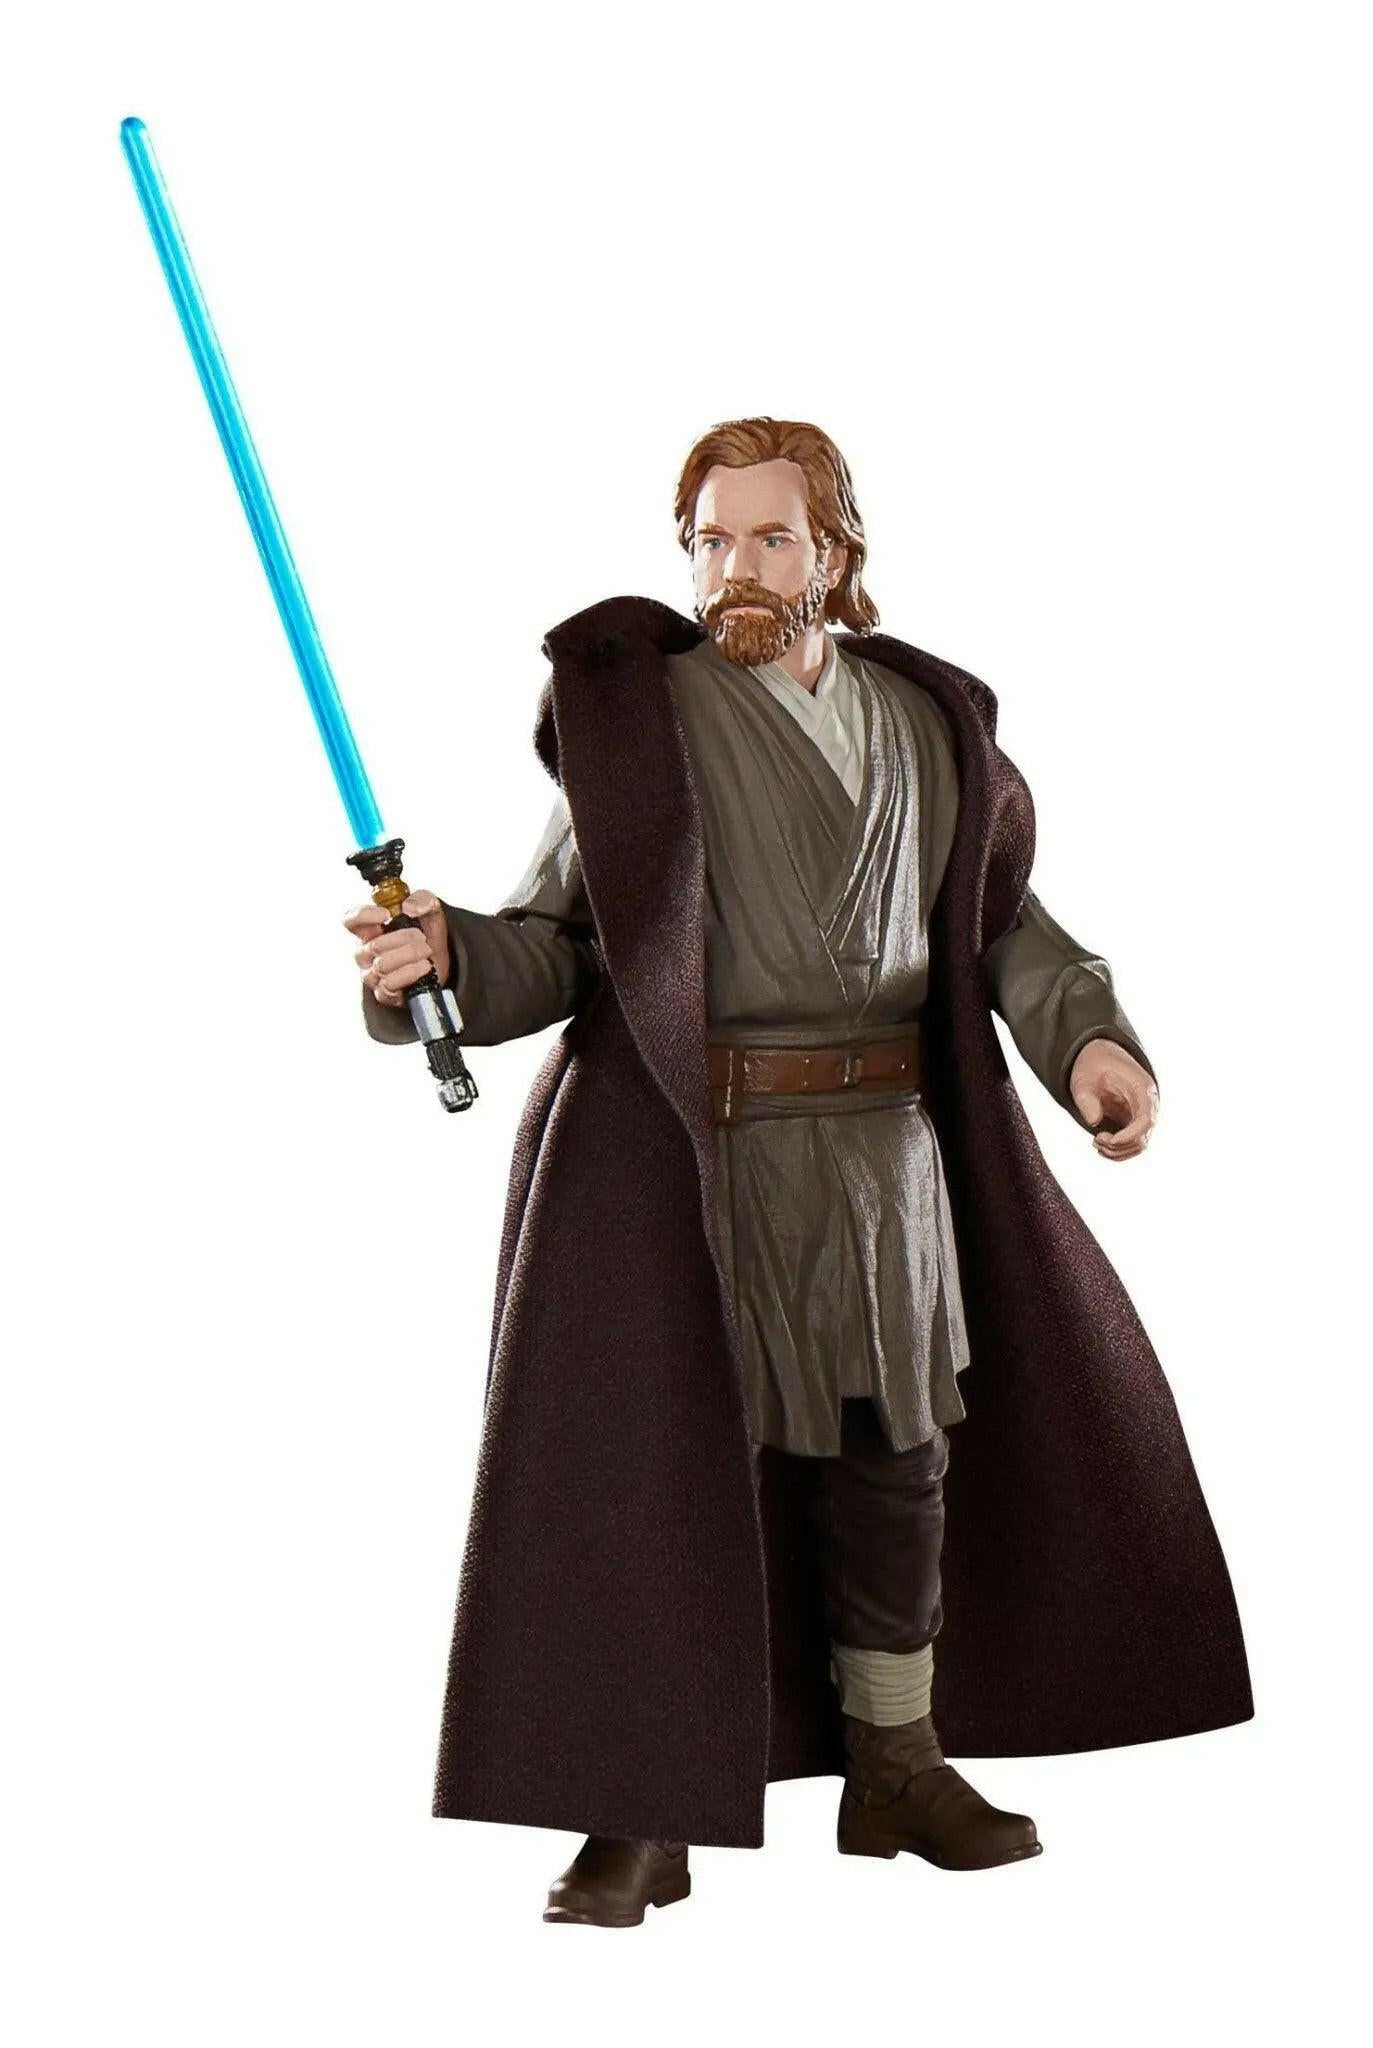 Star Wars Black Series Obi-Wan Kenobi Actionfigur Obi-Wan Kenobi (Jabiim) 15cm - Toy-Storage